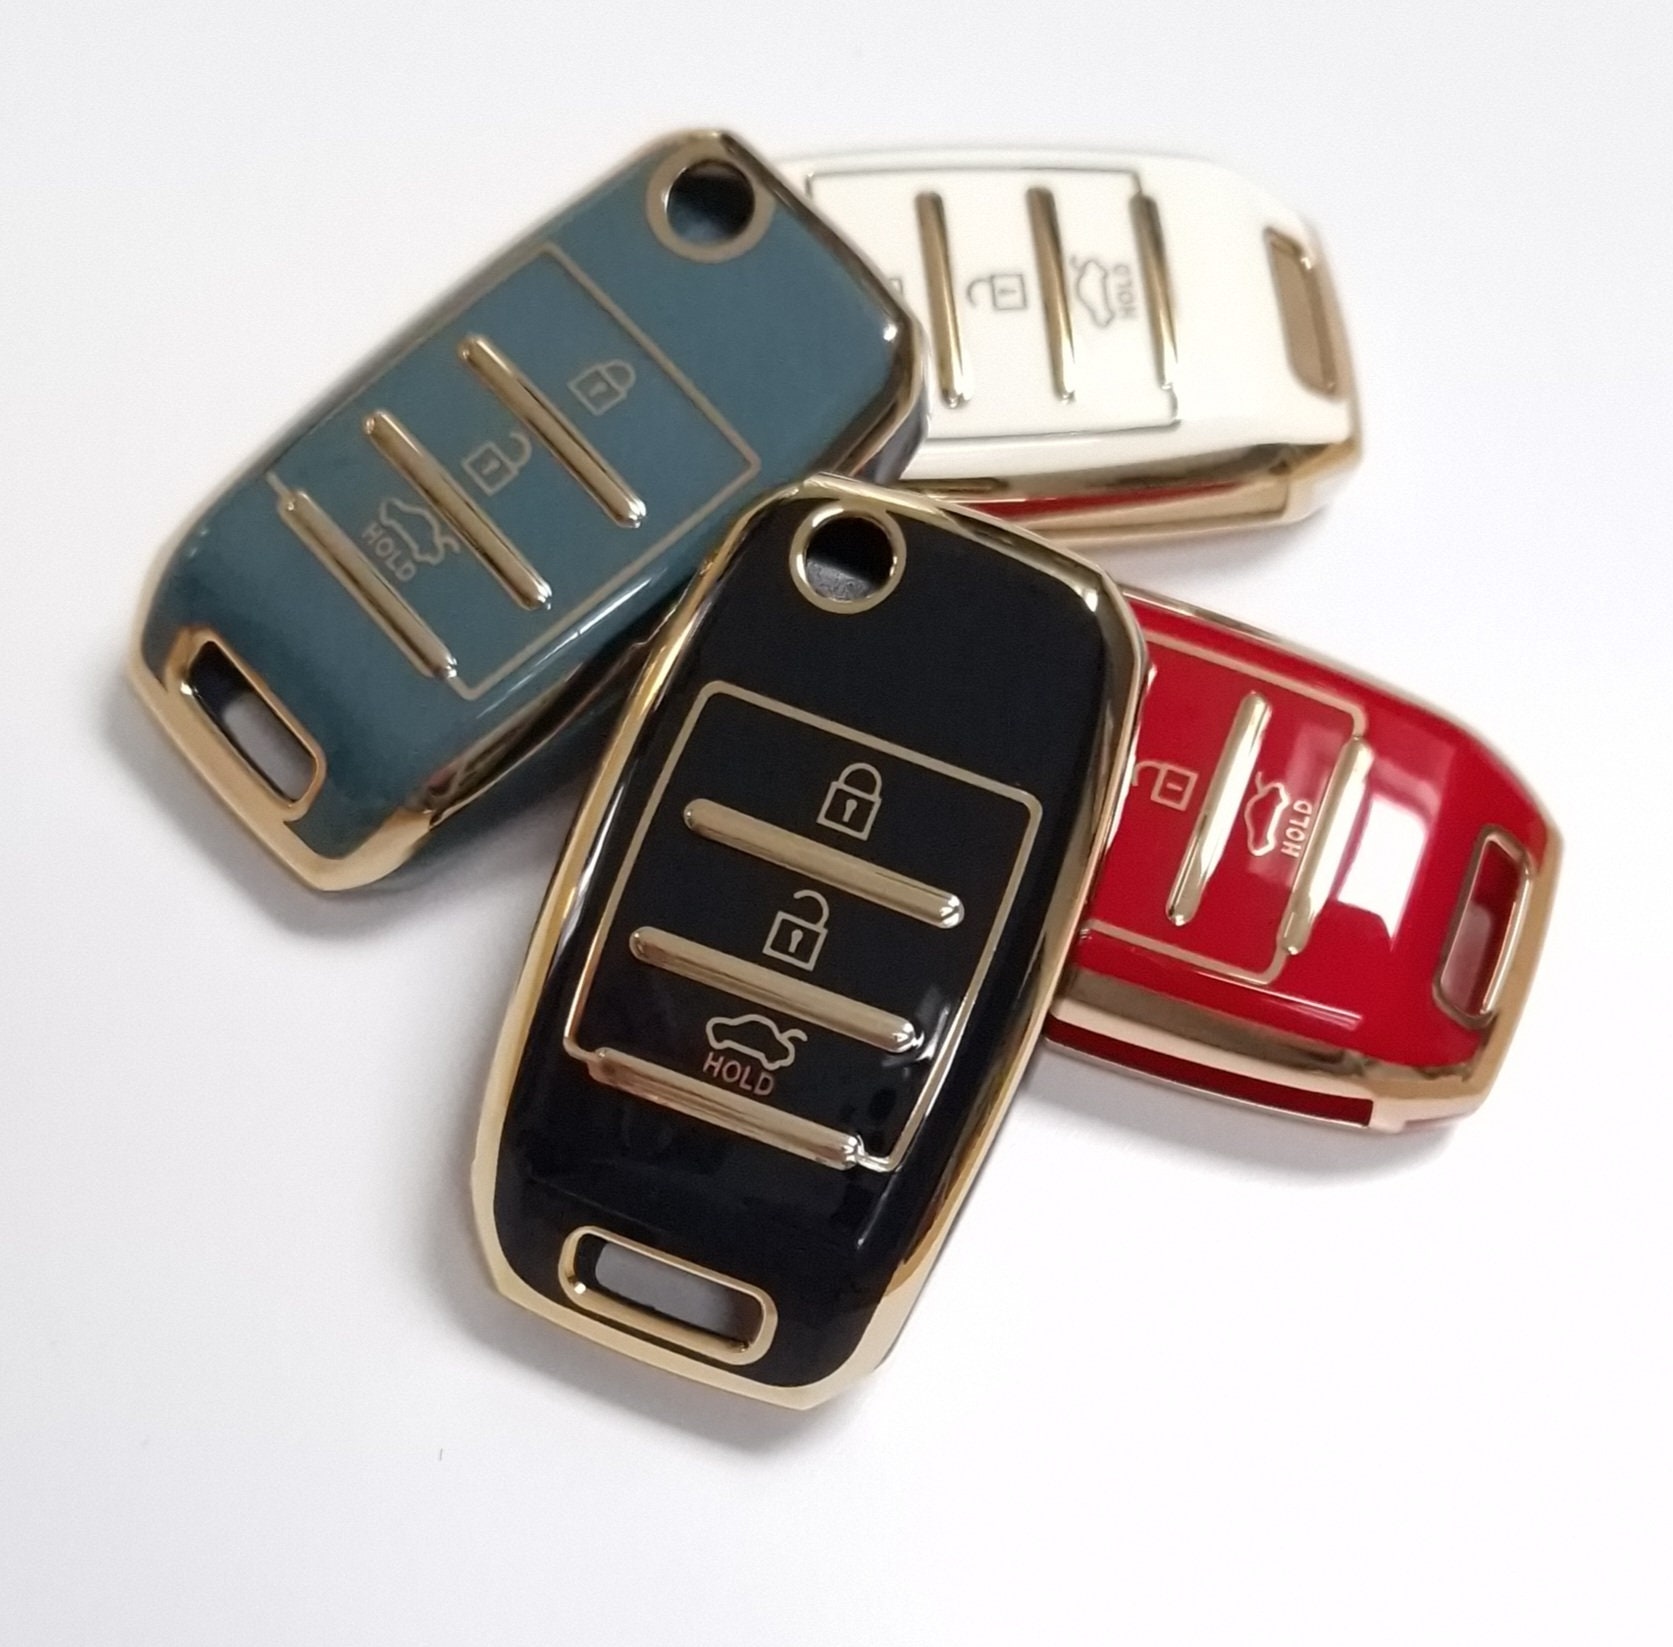 HIBEYO Intelligente Autoschlüssel Hülle Passt für KIA Schlüsselhülle Leder  Schutzhülle für KIA Sportage GT Stinger Sorento Ceed Cerato Forte Seele  NIRO Schlüsselbox mit Schlüsselanhänger-Gelb: : Elektronik & Foto